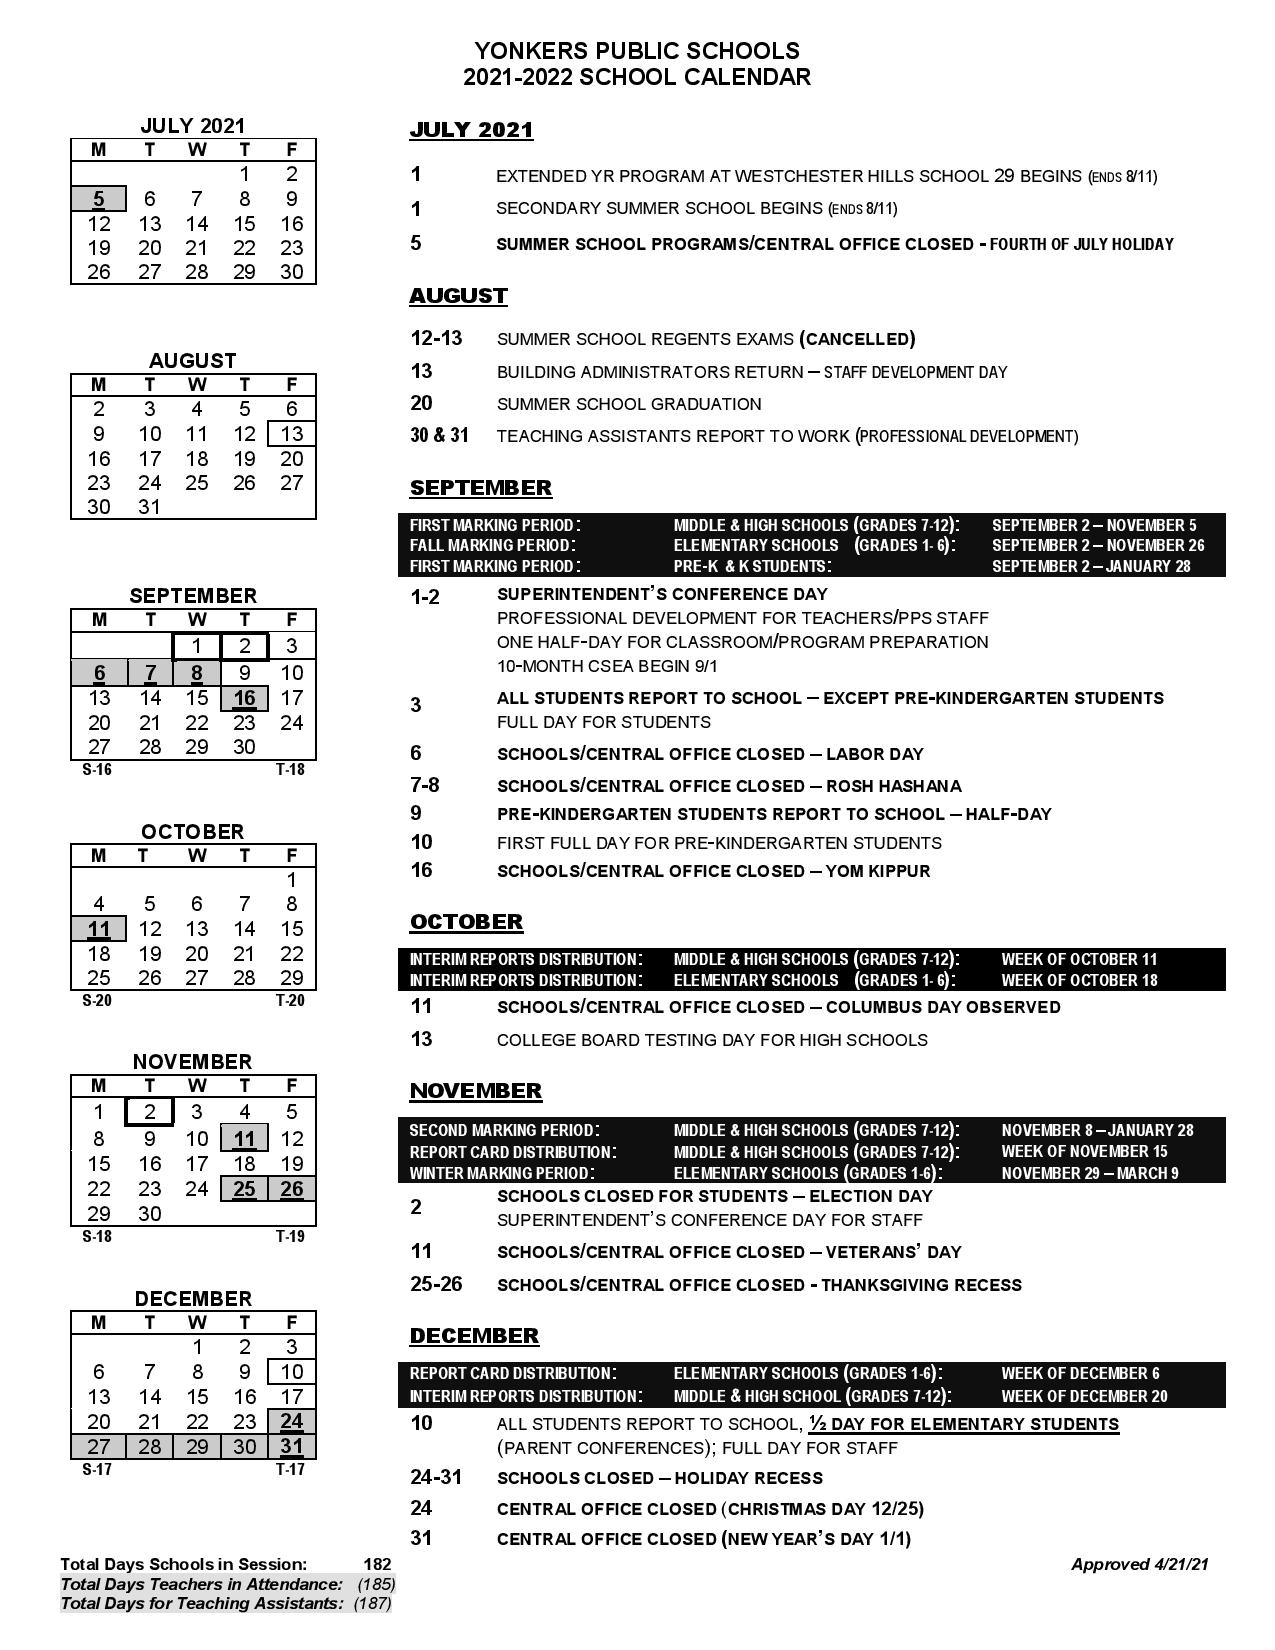 Yonkers Public Schools Calendar 2021 2022 In Pdf